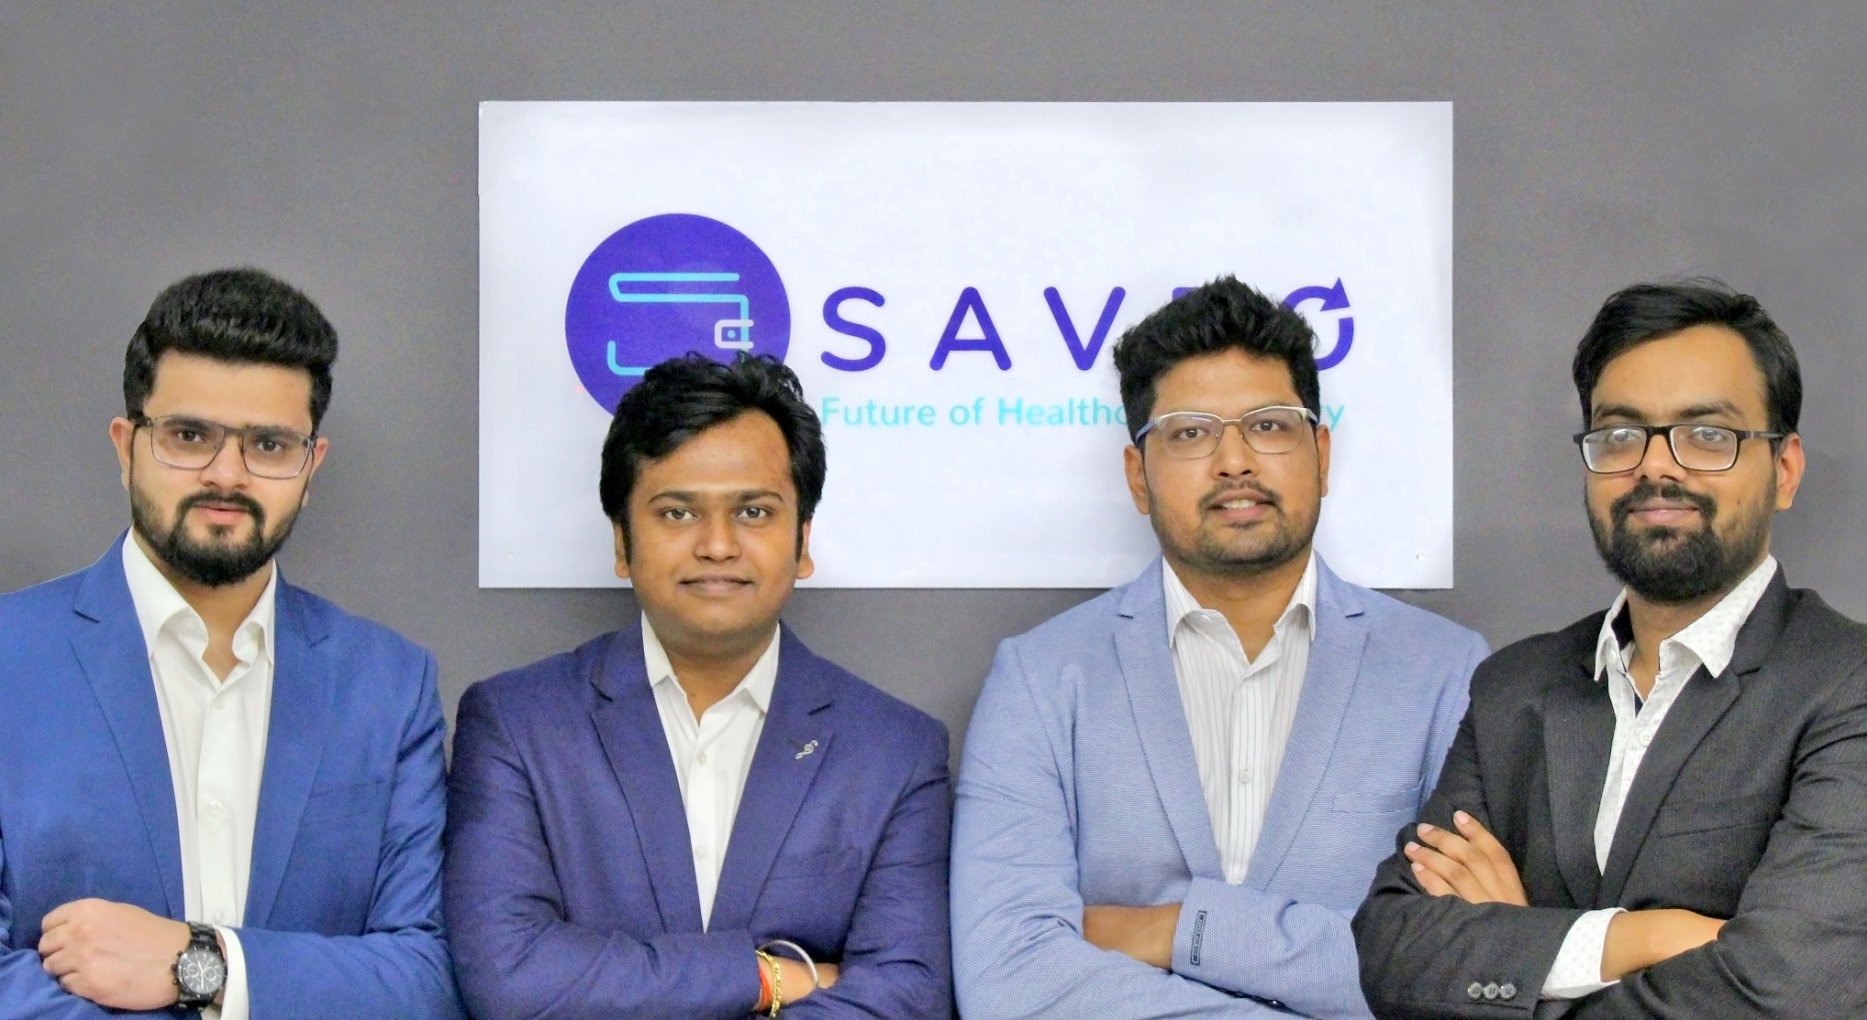 Saveo's founders